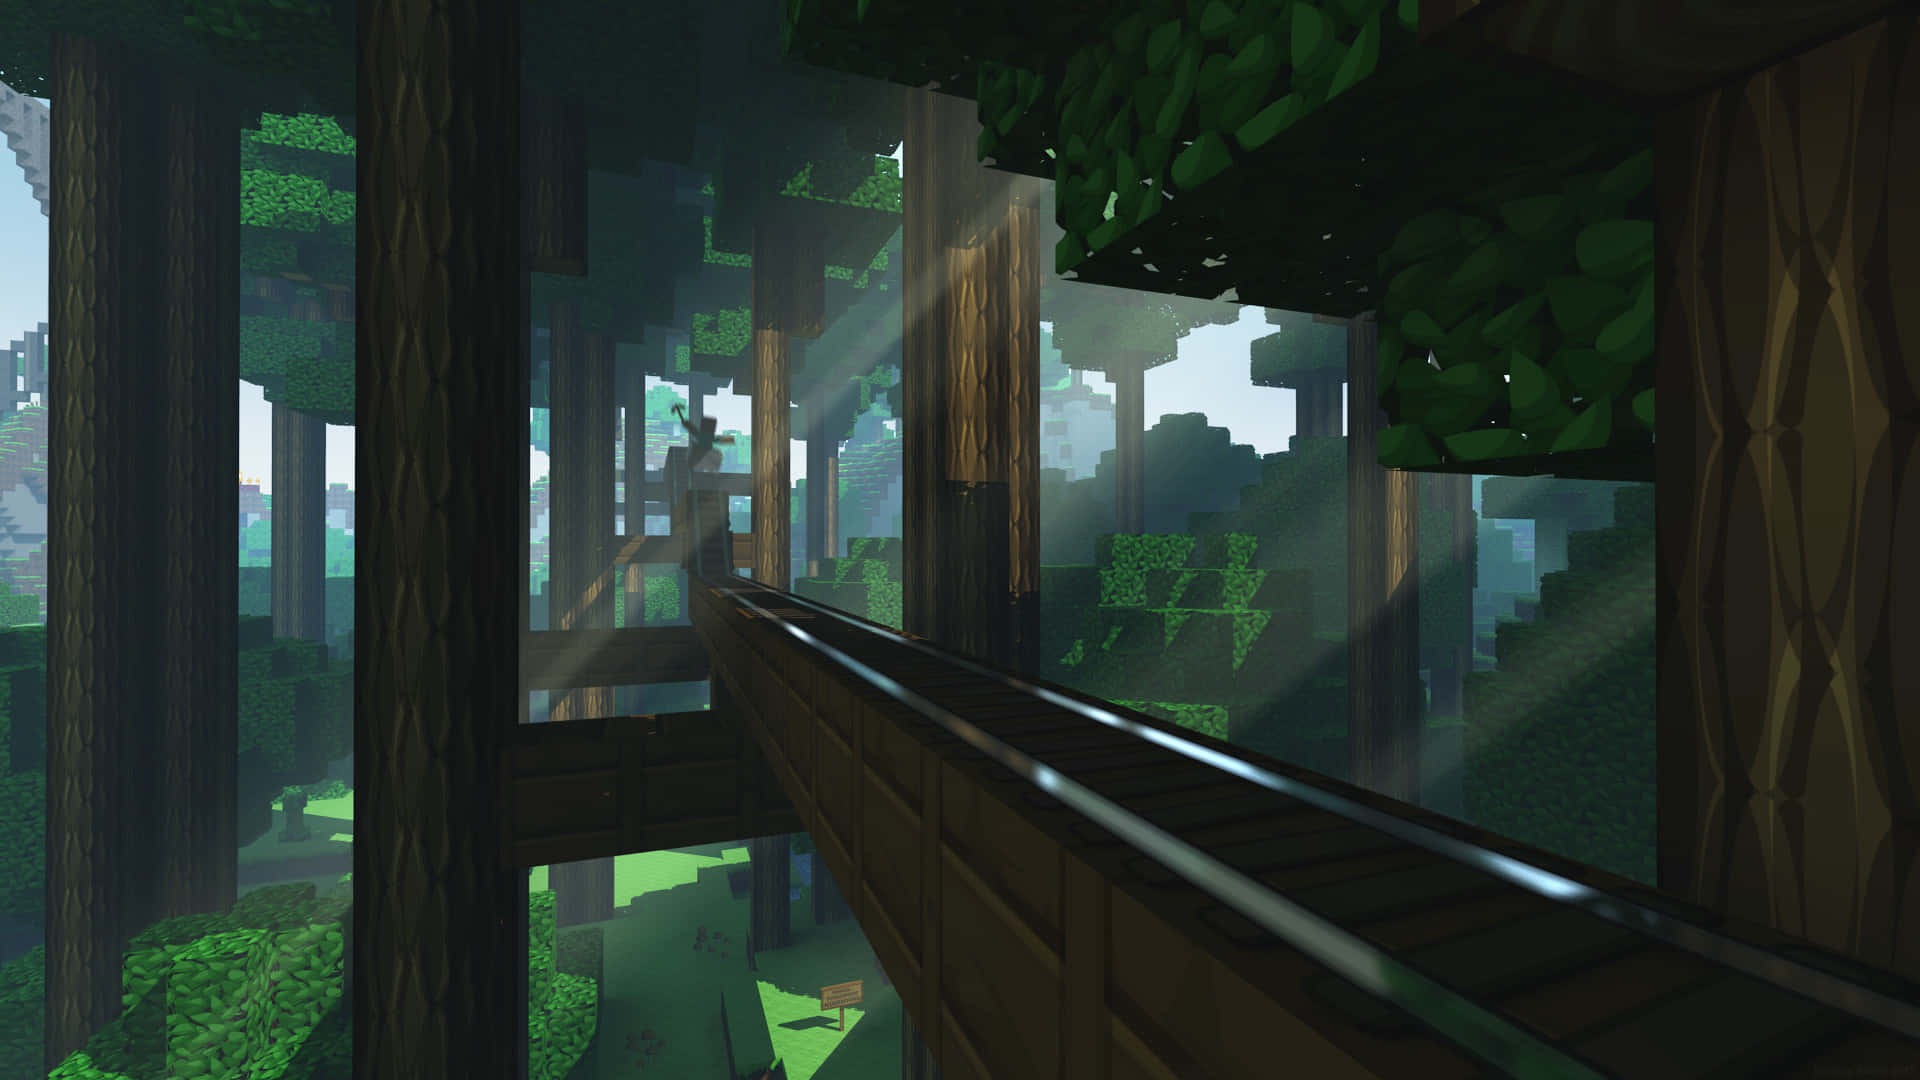 Enskärmdump Av Ett Minecraft-spel Med En Tåg I Skogen.